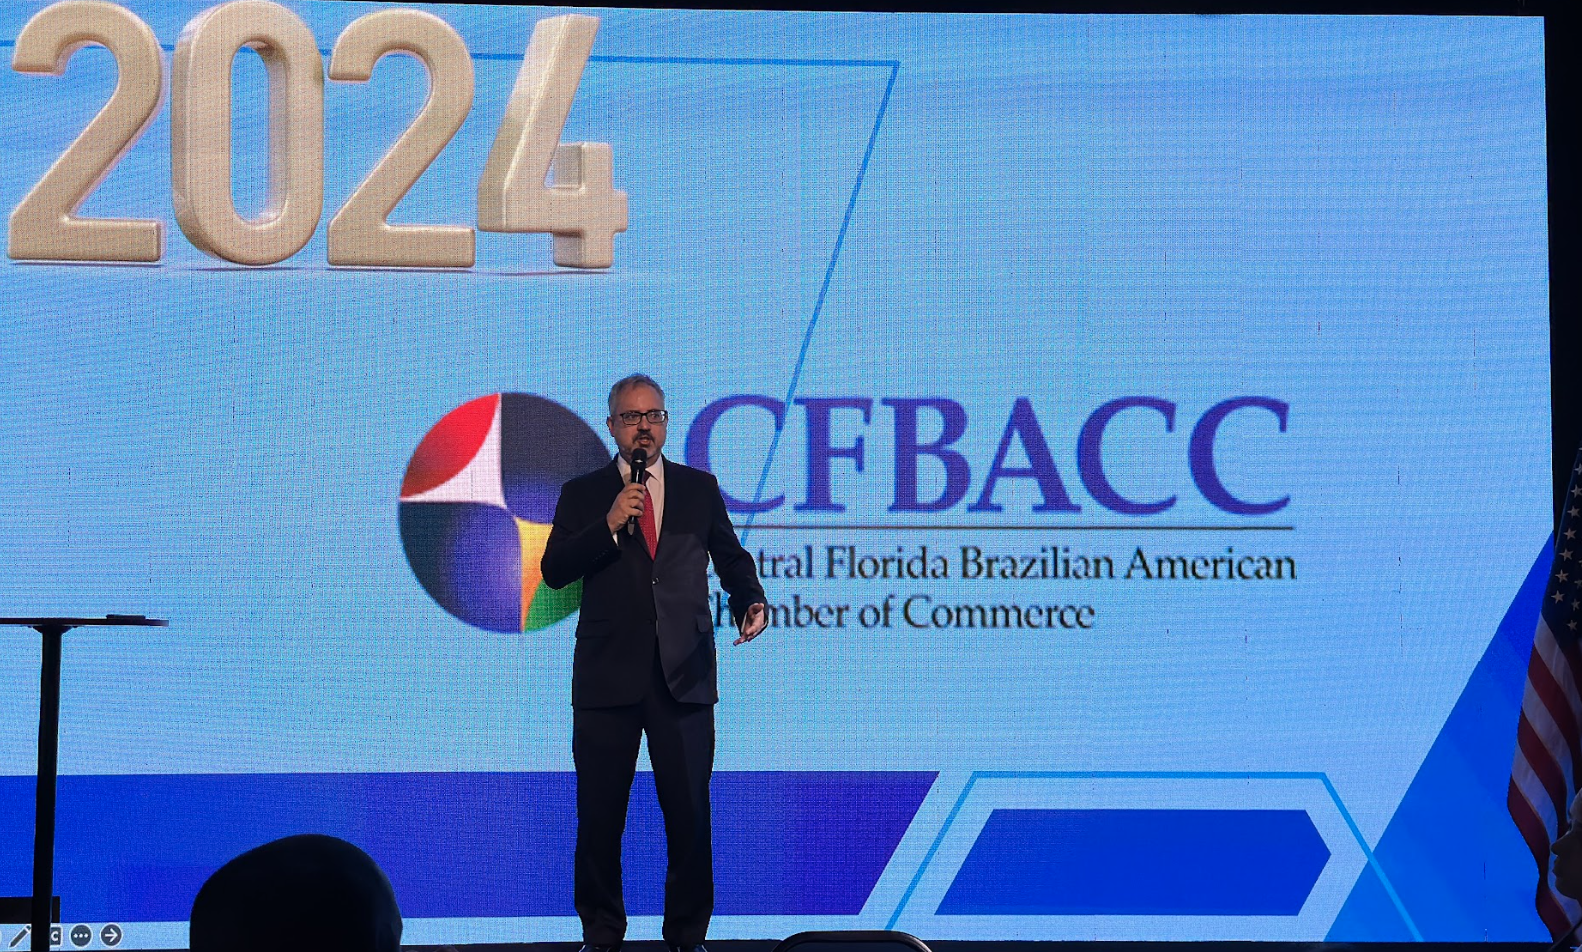 O primeiro Summit da CFBACC foi um sucesso, marcando o início de uma jornada promissora para o intercâmbio comercial e a cooperação entre o Brasil e os Estados Unidos